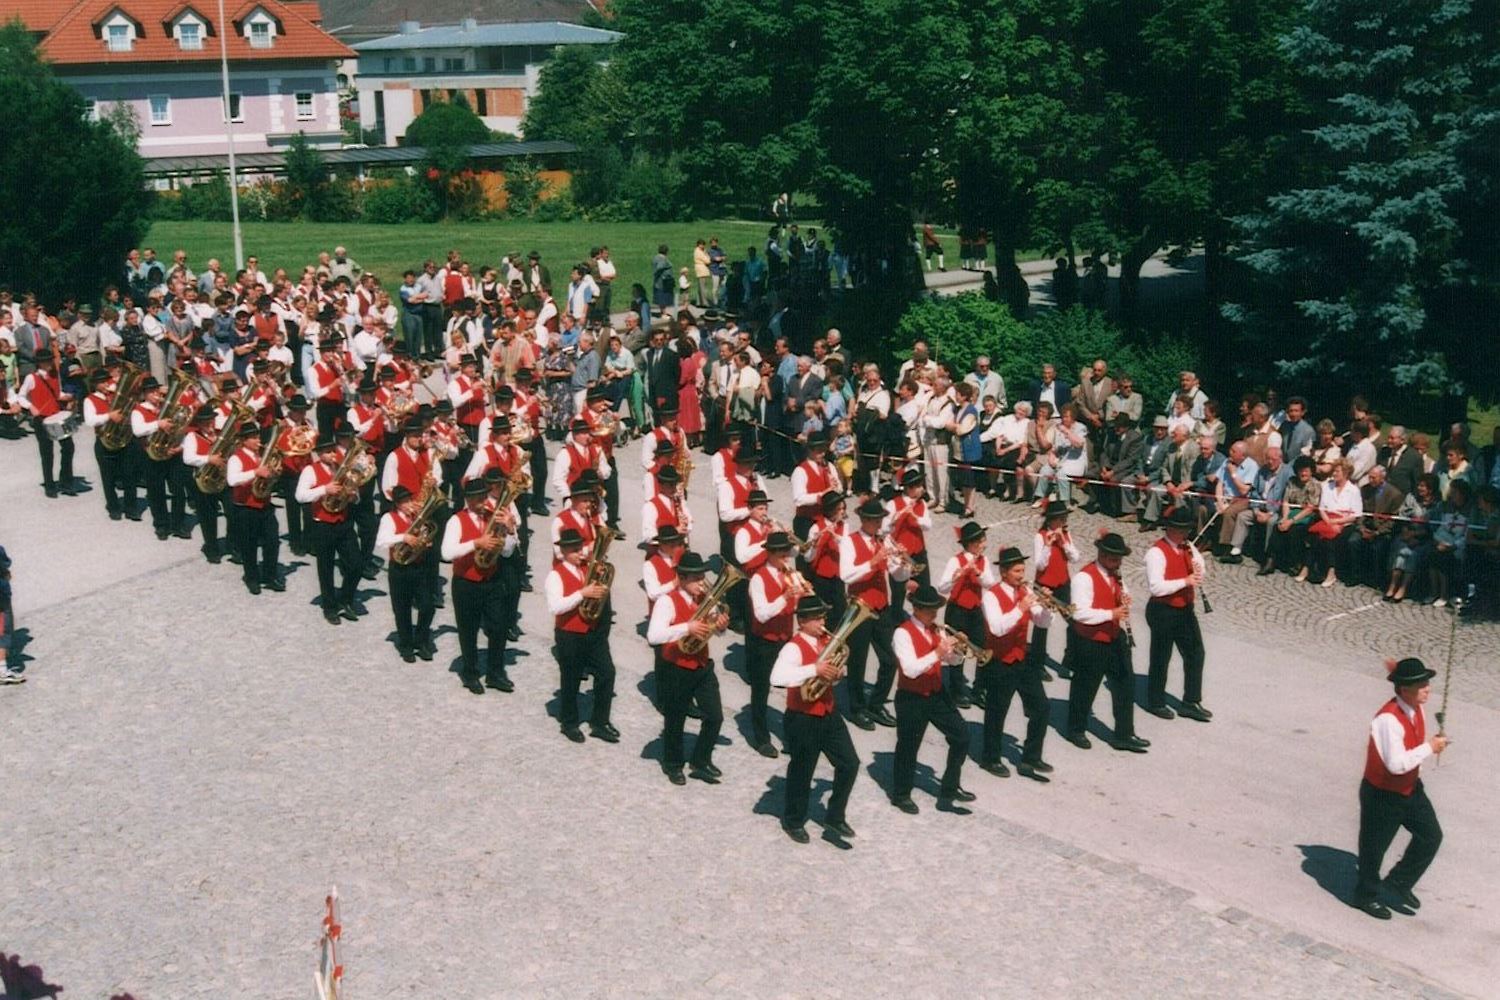 Marschwertung 1999 in Sattledt